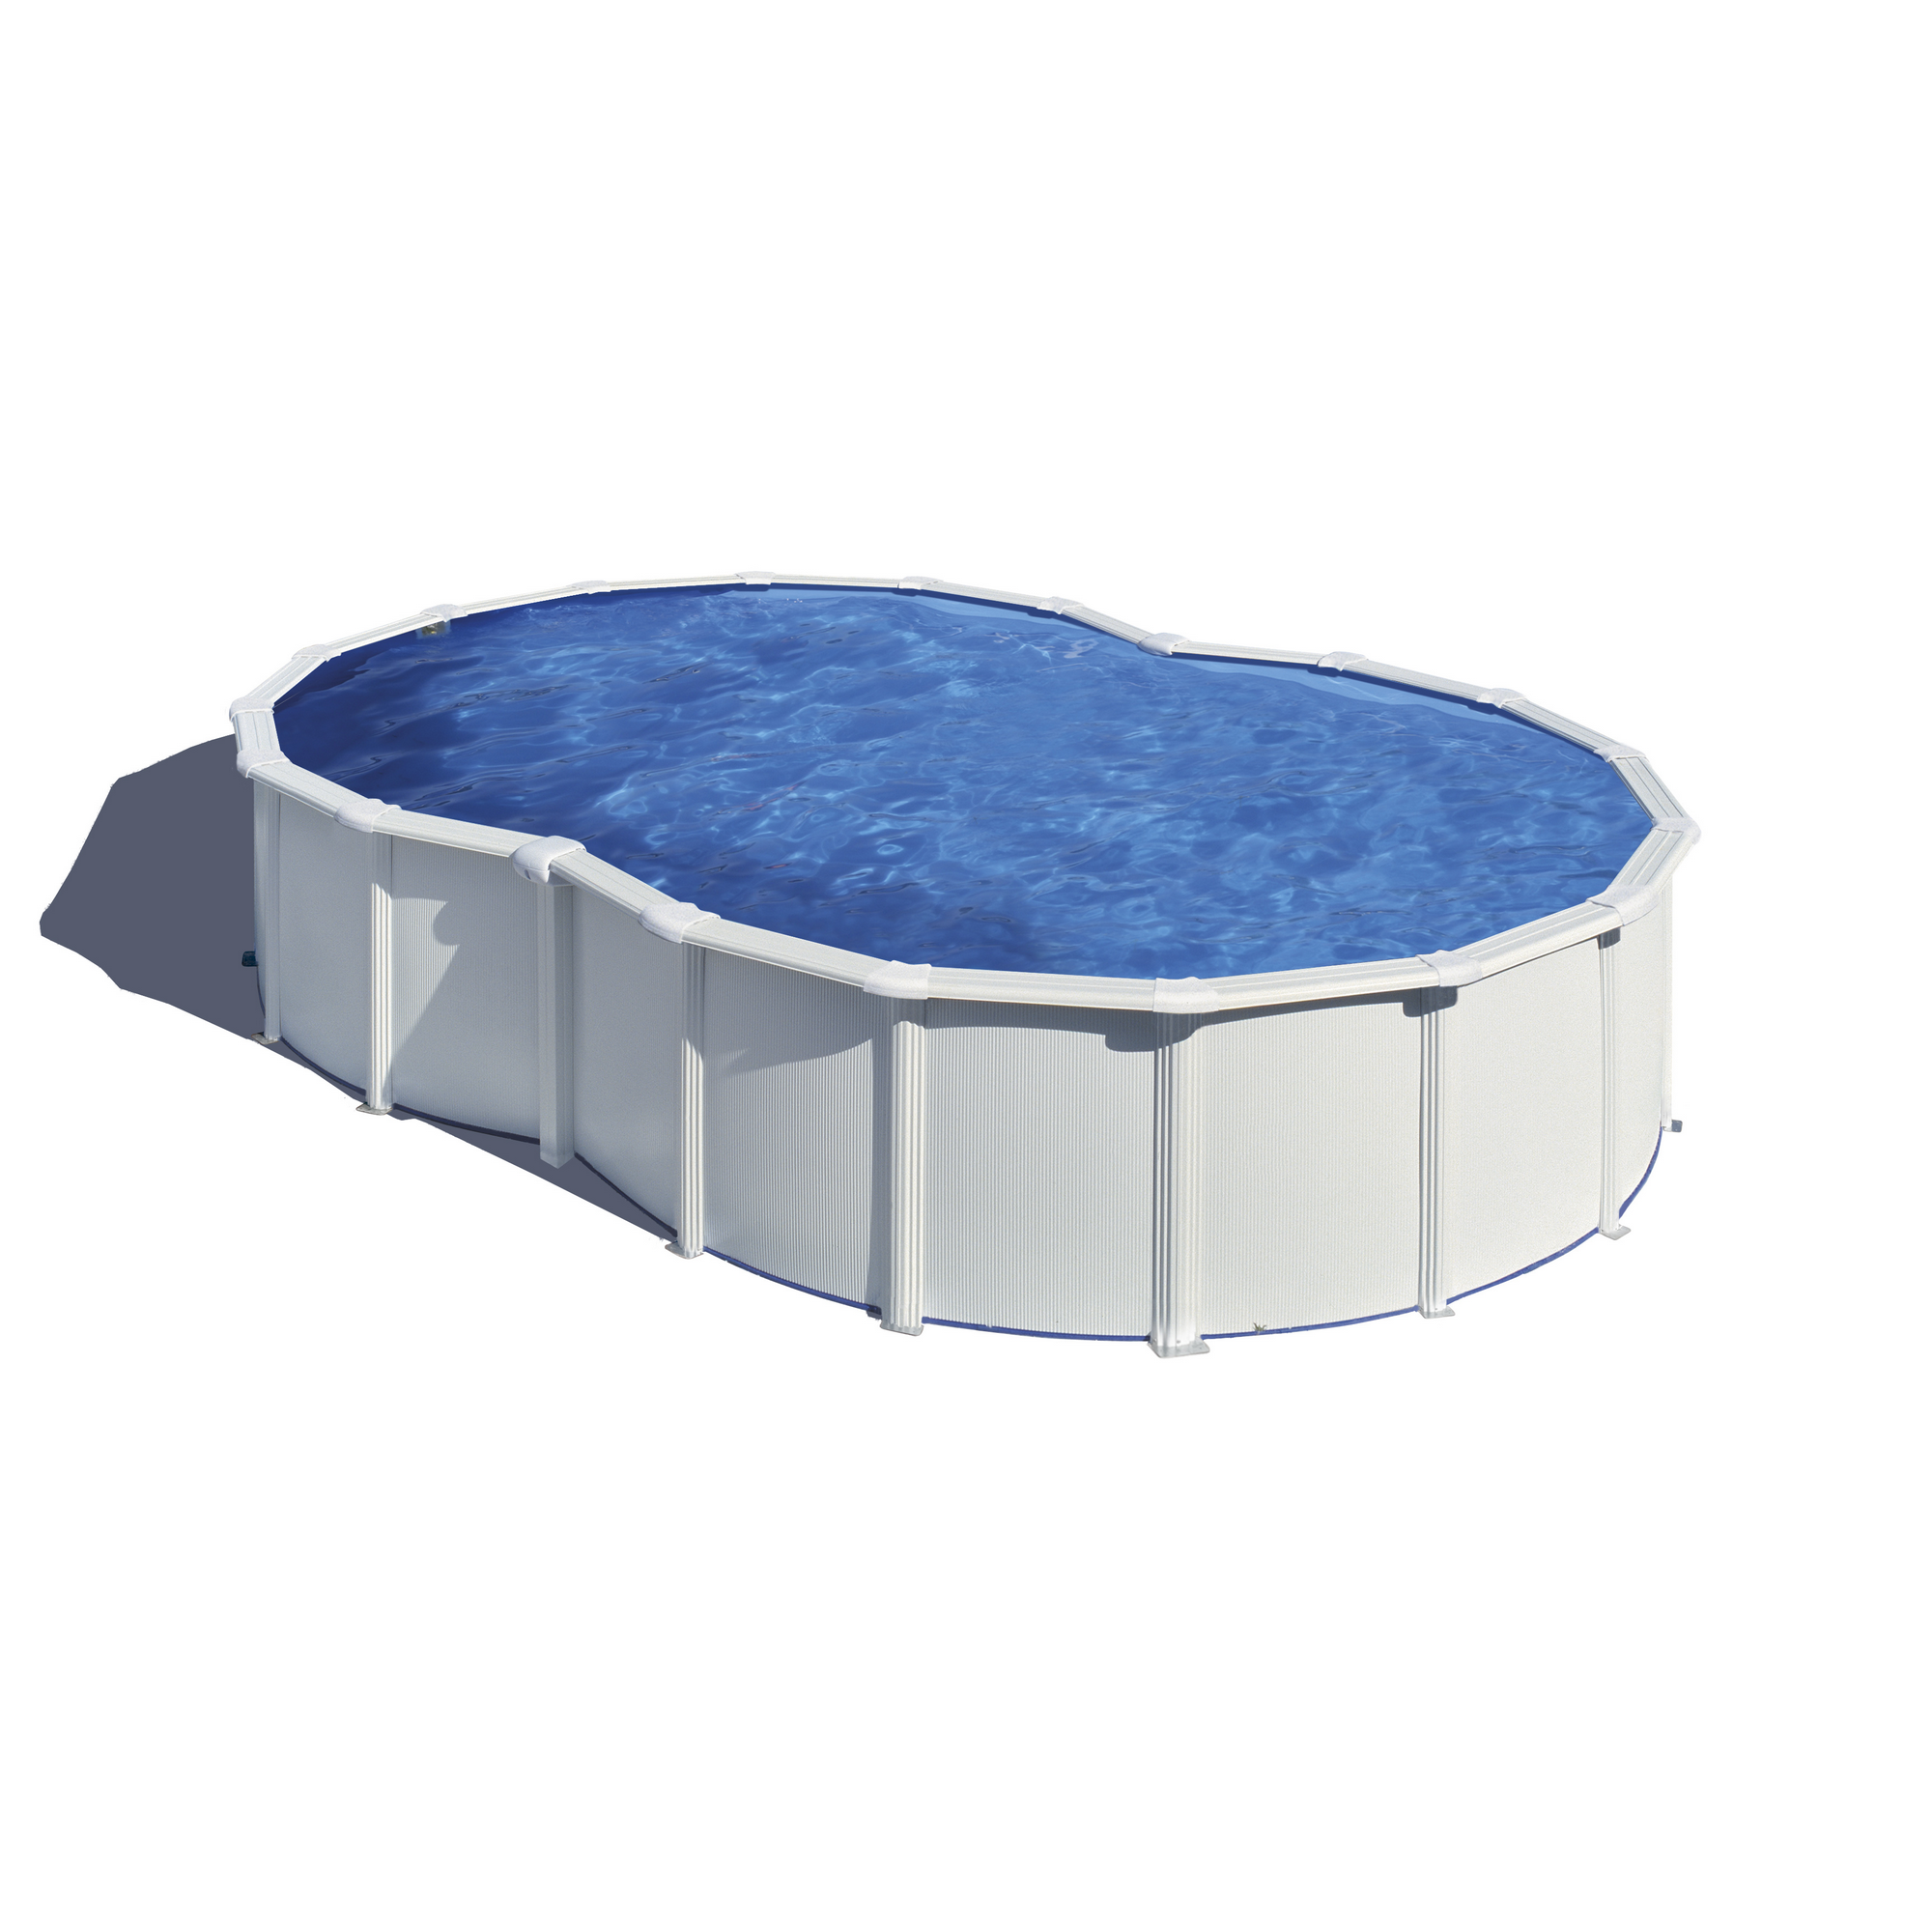 GRE Aufstellpool-Set ‚Varadero‘ blau/weiß achteckig 500 x 340 x 122 cm